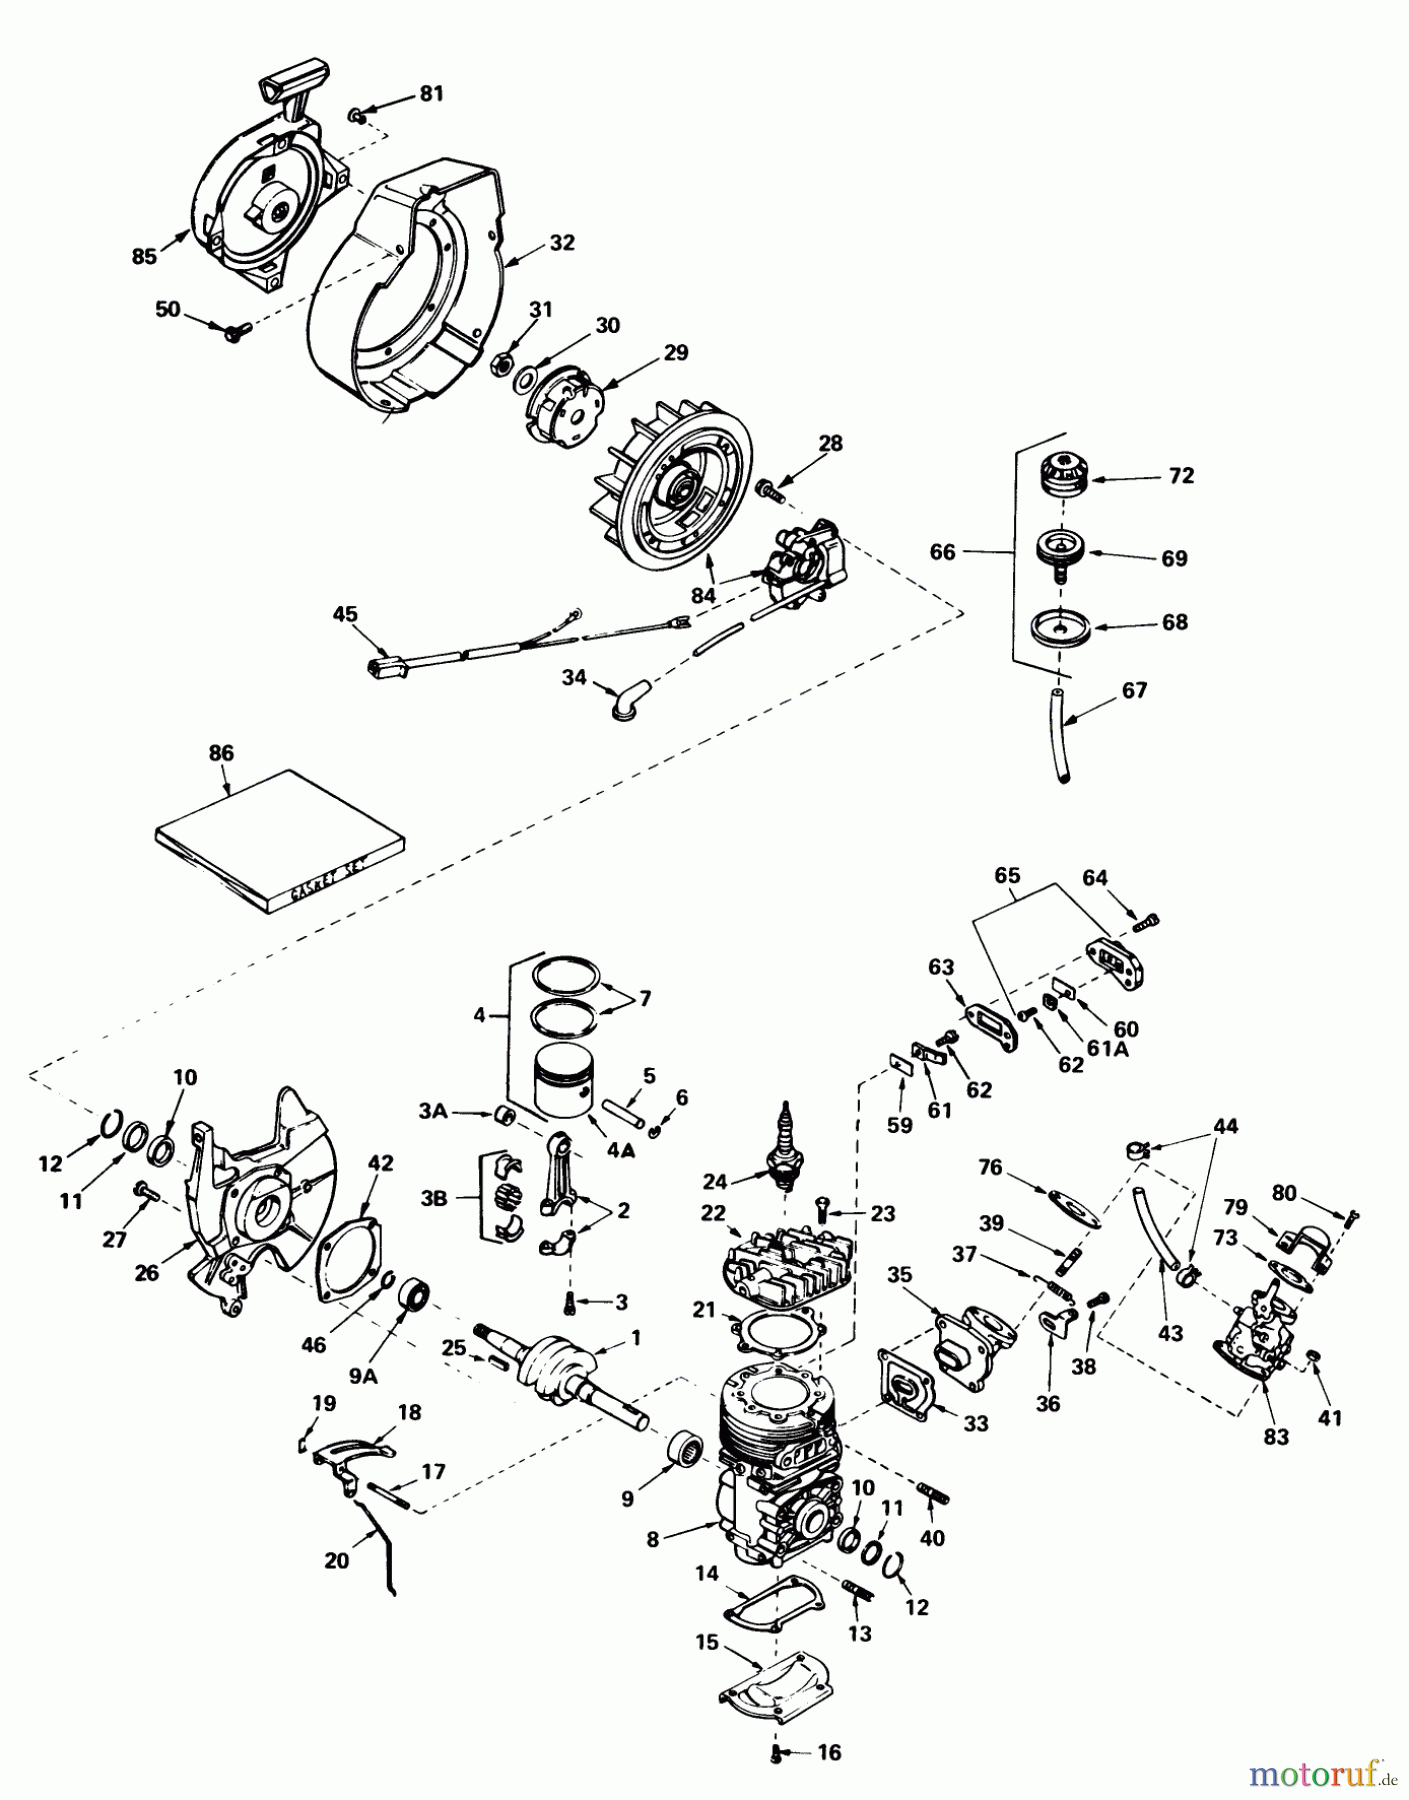  Toro Neu Snow Blowers/Snow Throwers Seite 1 38232 (S-200) - Toro S-200 Snowthrower, 1982 (2000001-2999999) ENGINE ASSEMBLY (ENGINE TECUMSEH MODEL NO. AH520 TYPE 1585B)